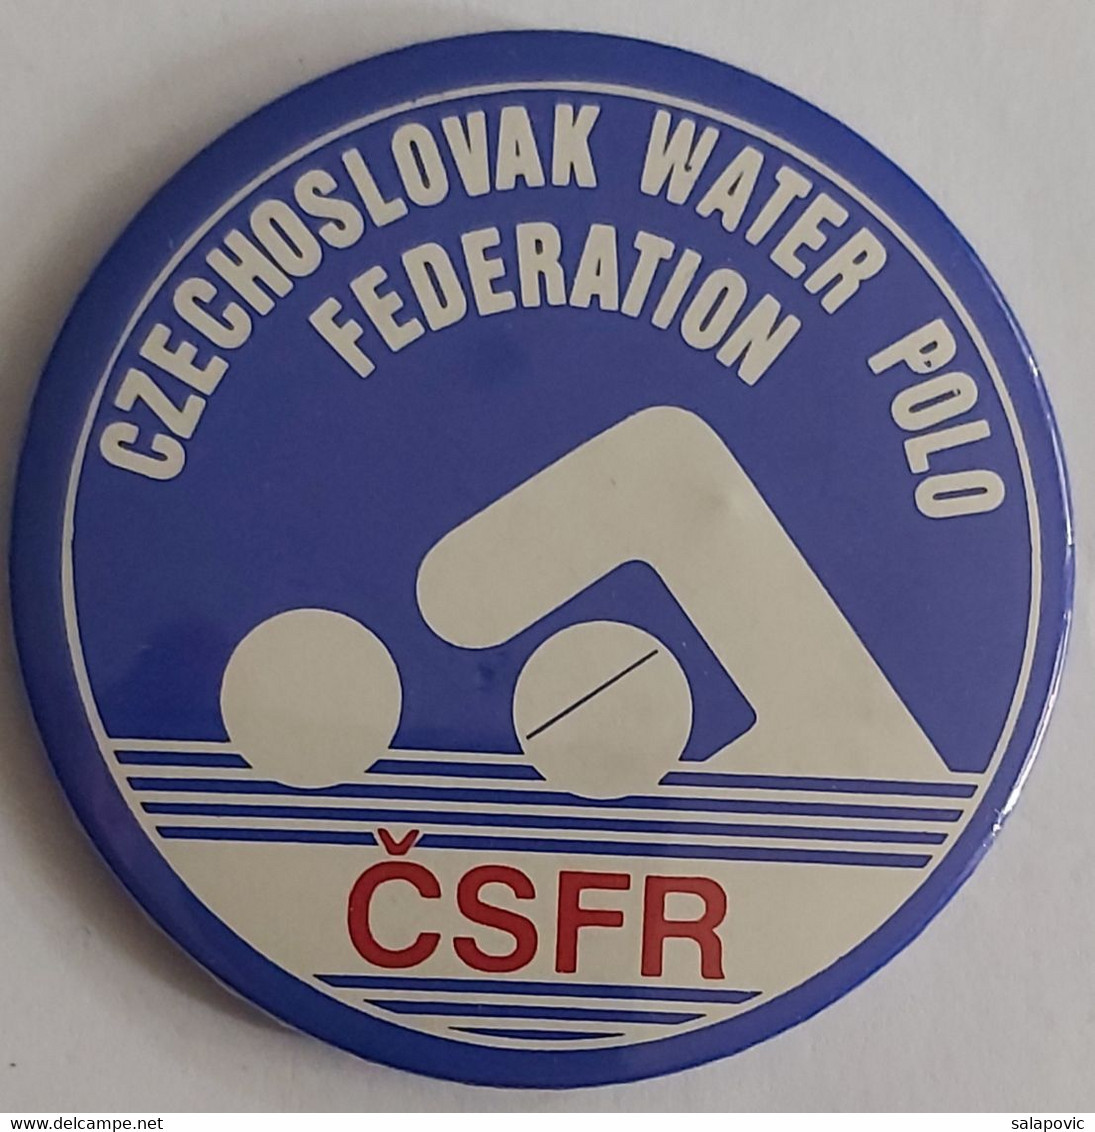 CZECHOSLOVAK WATER POLO FEDERATION Badge  PLAST - Fechten